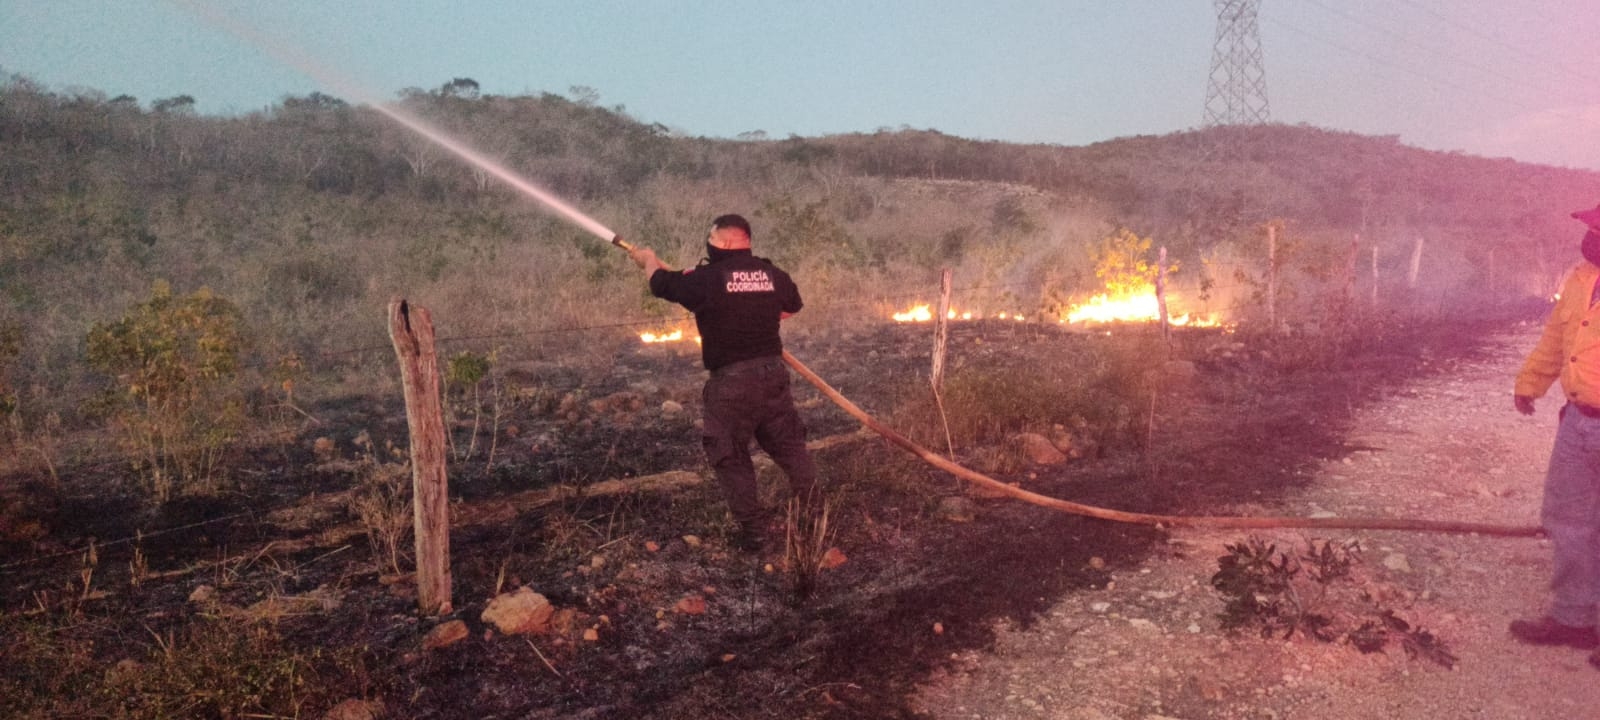 Procivy registra 15 incendios forestales durante marzo en Tekax